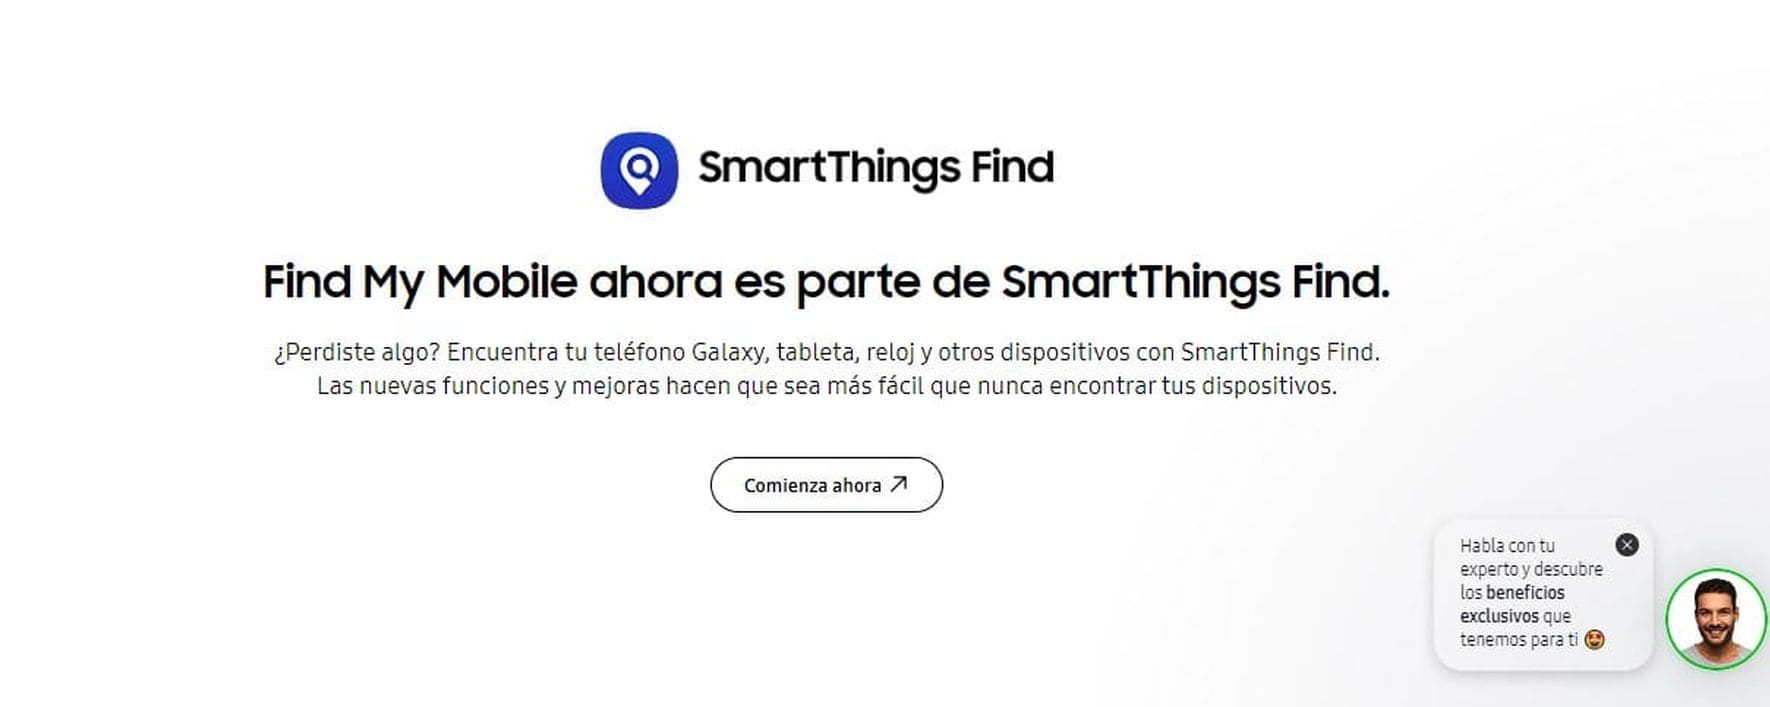 Vista de la página web de SmartThings Find